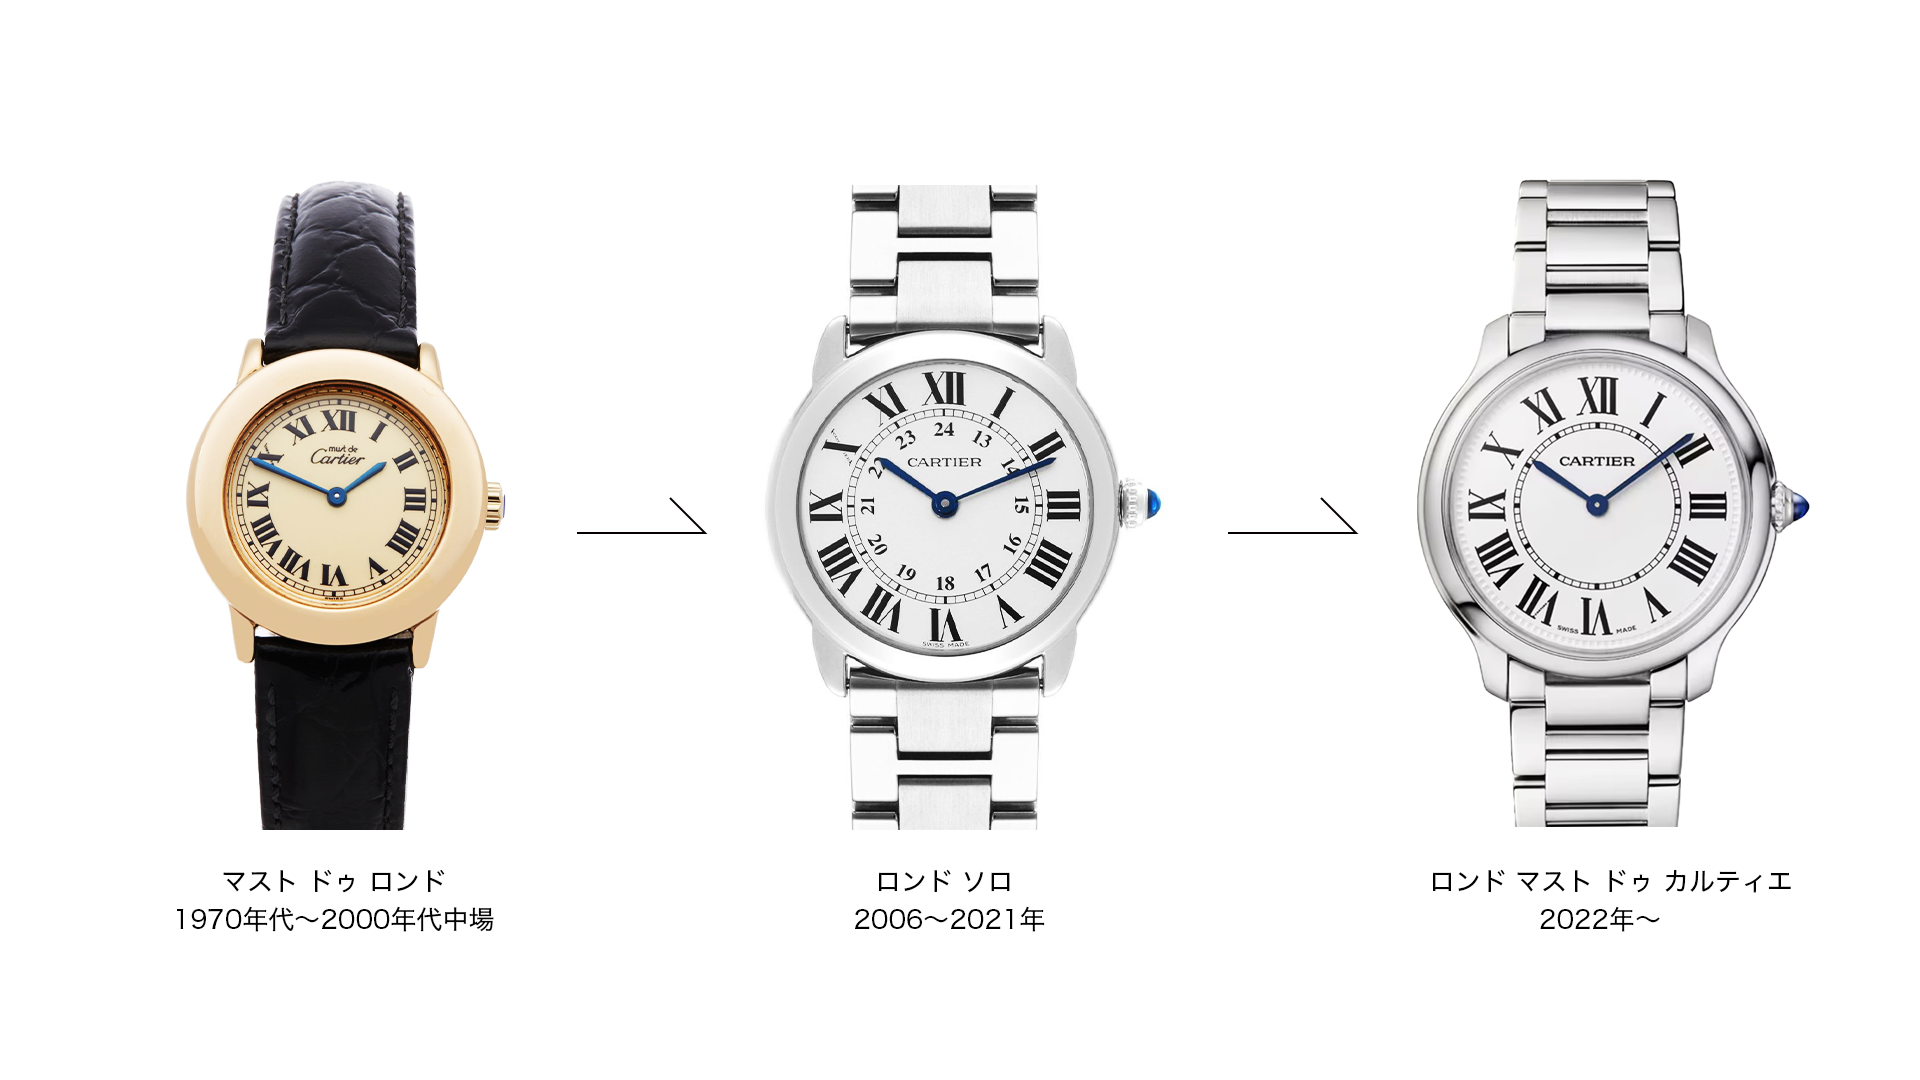 カルティエの腕時計『マスト ドゥ ロンドからロンドソロからロンドマスト』までの進化の系譜